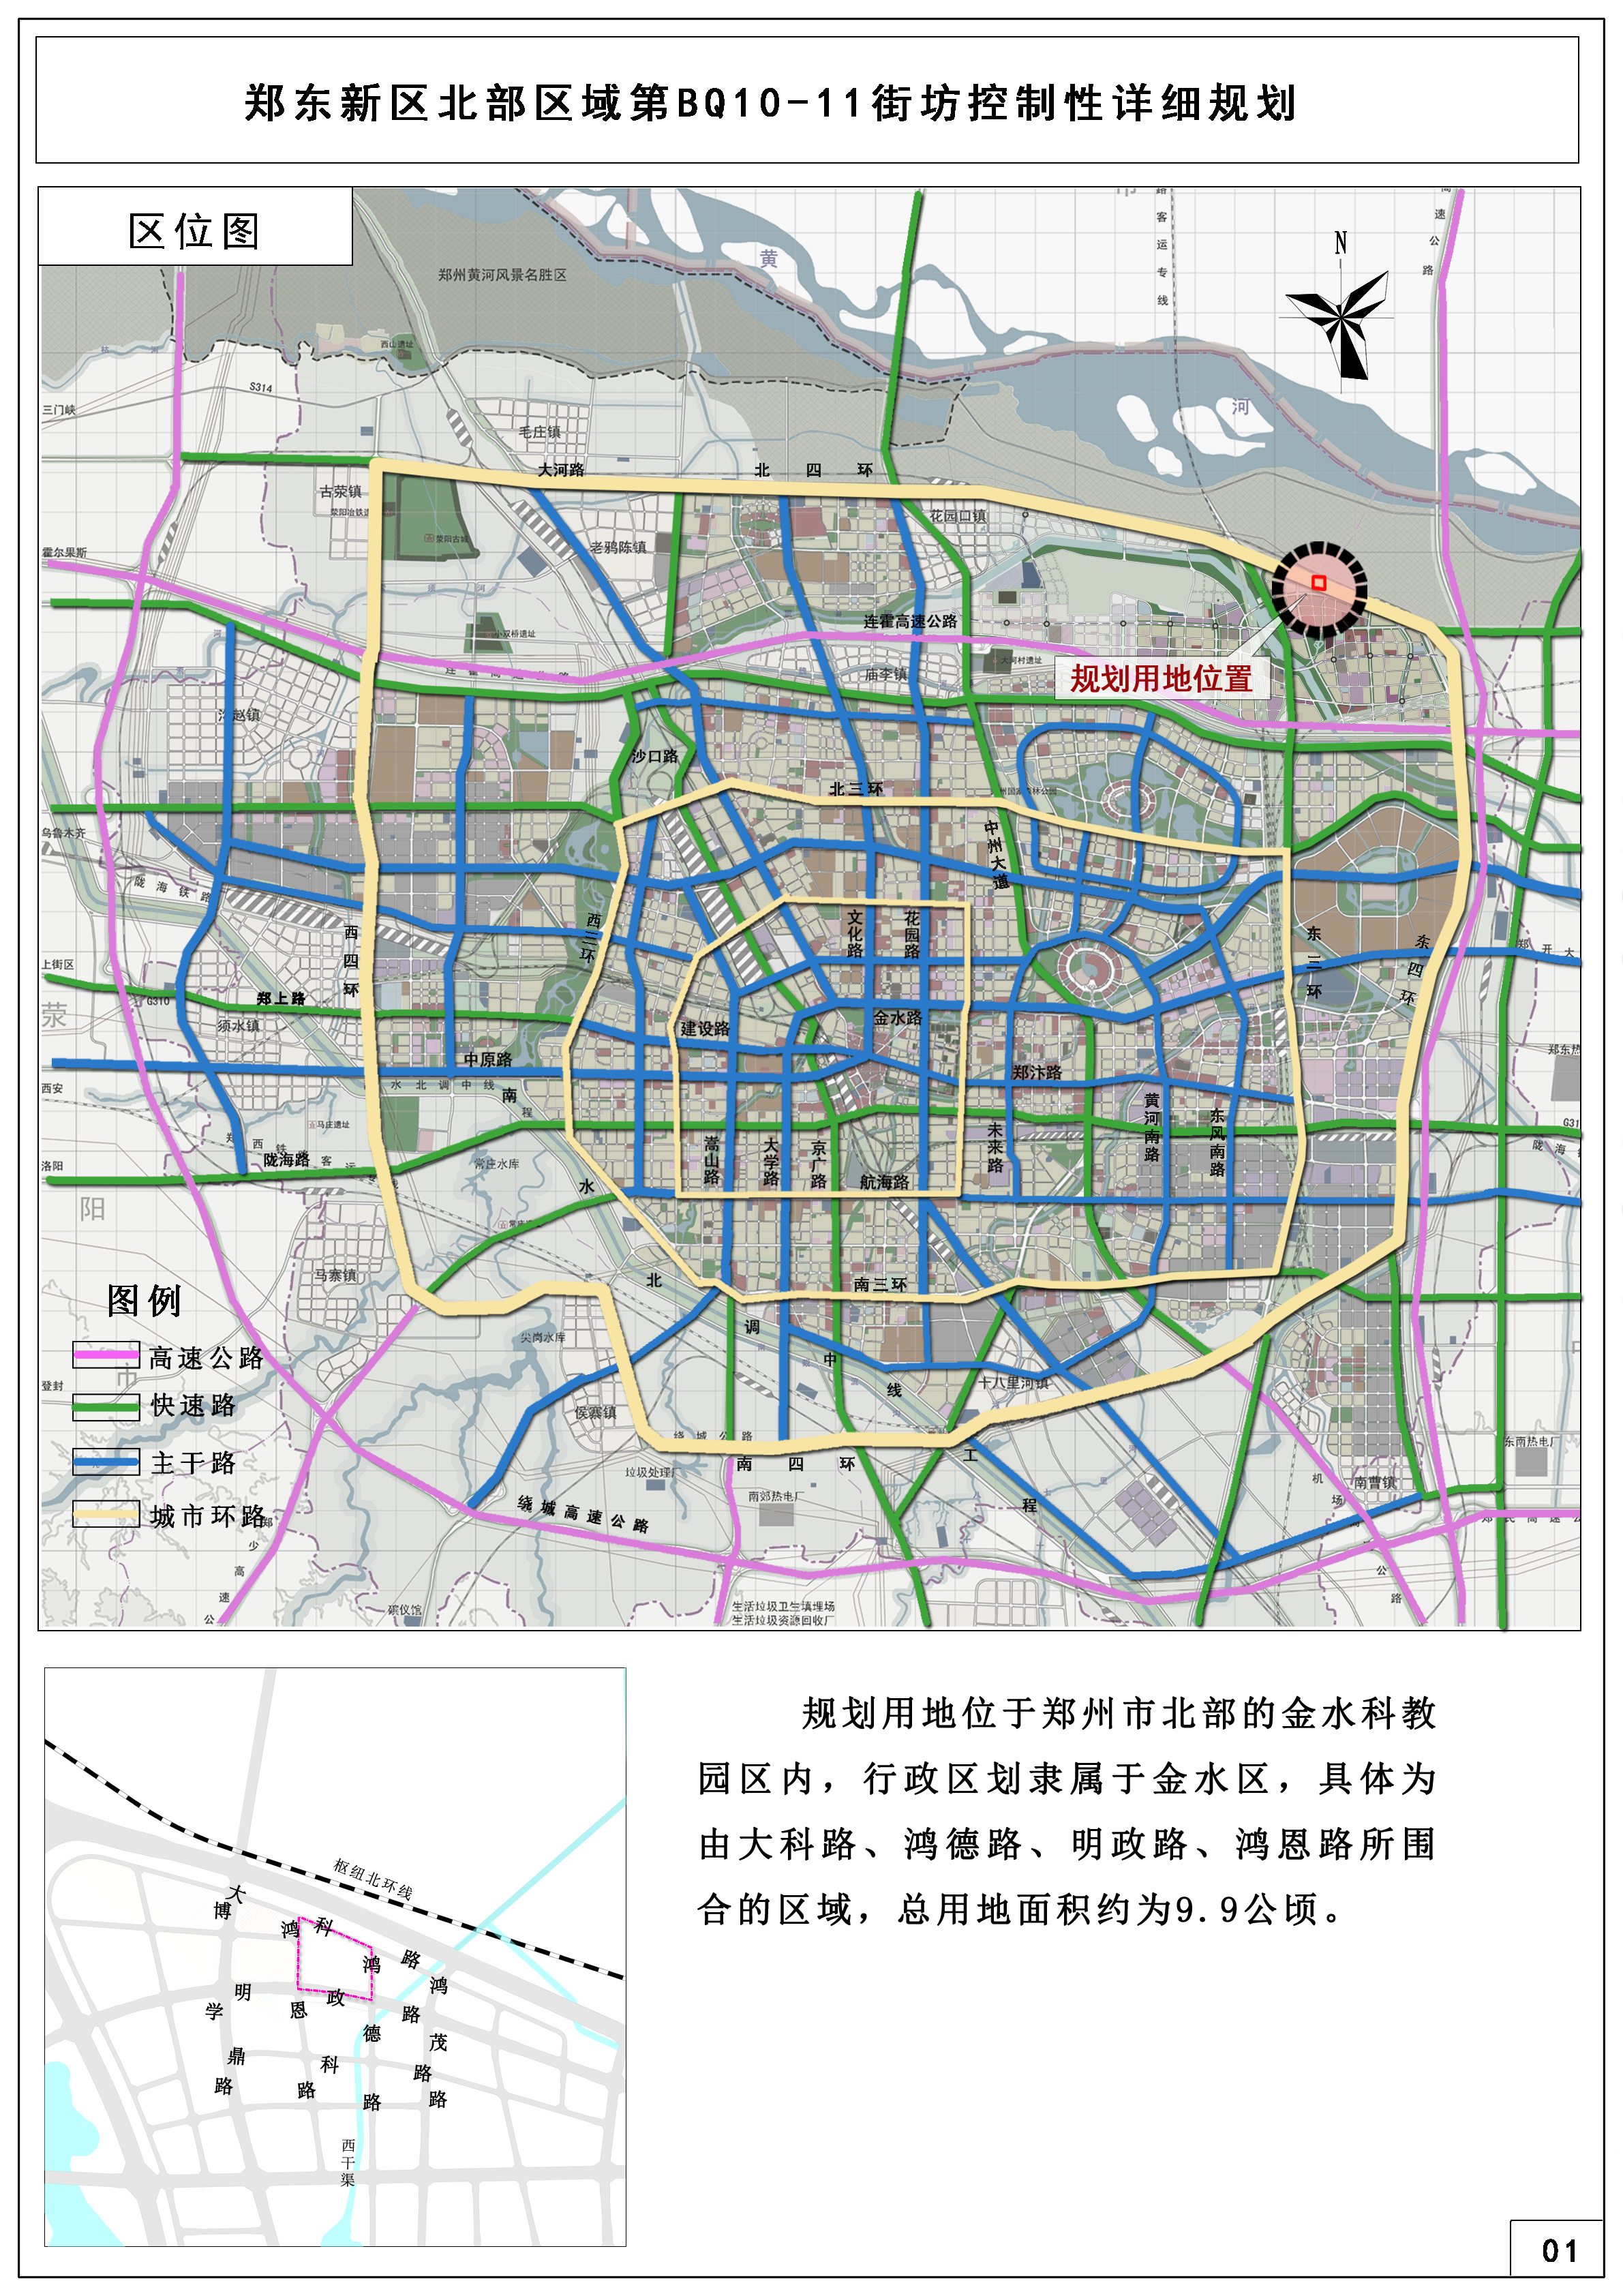 郑东新区北部区域第BQ10-11街坊控制性详细规划